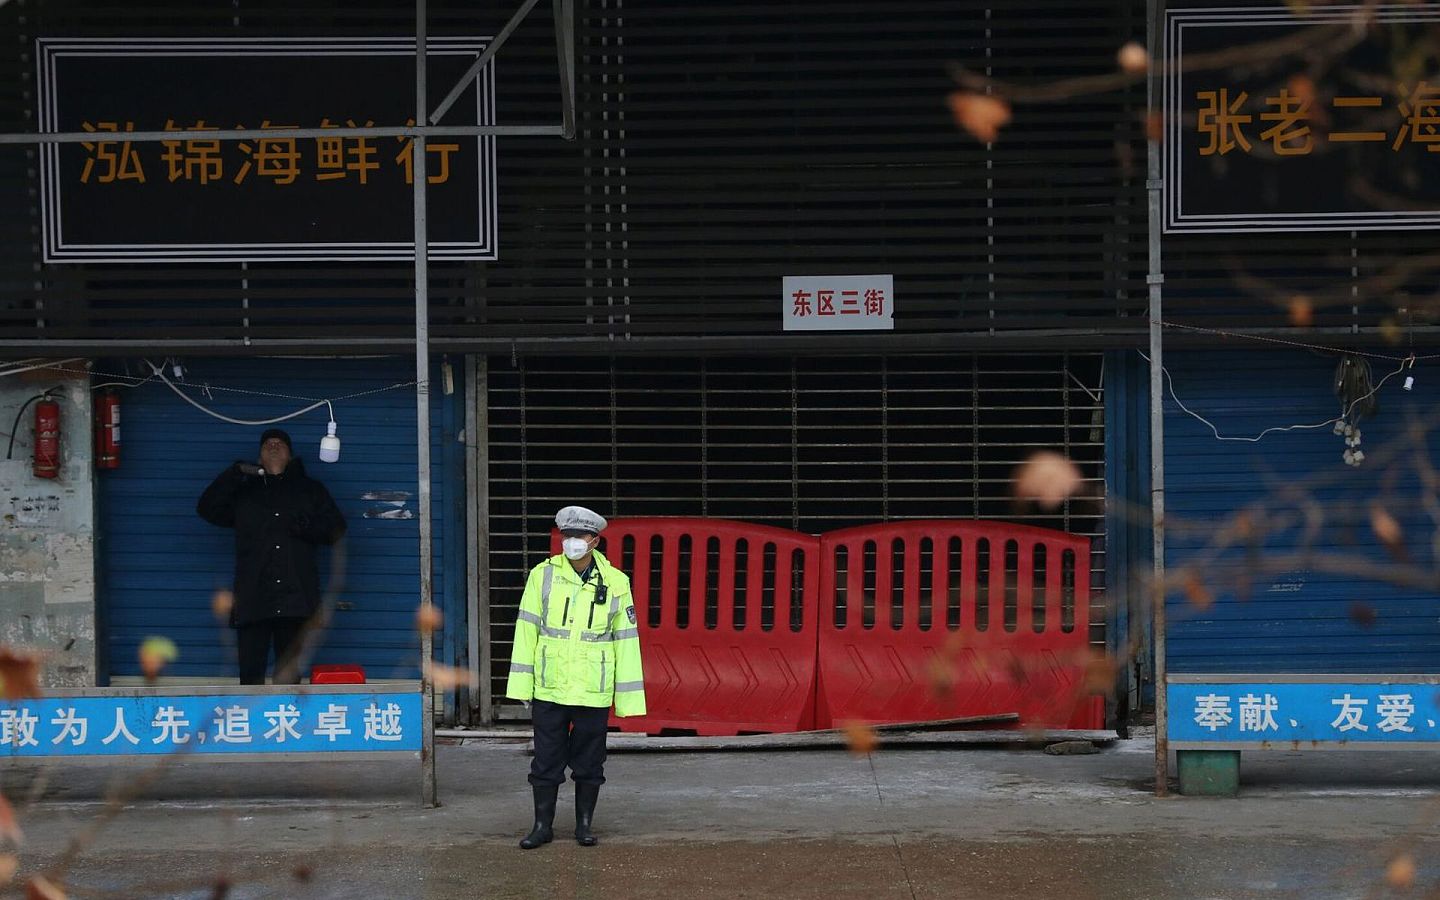 武汉华南海鲜市场曾被认为是最早出现新冠病毒的场所。图为2020年1月10日，一名戴着口罩的警务人员站在中国湖北省武汉市封闭的海鲜市场前。（路透社）